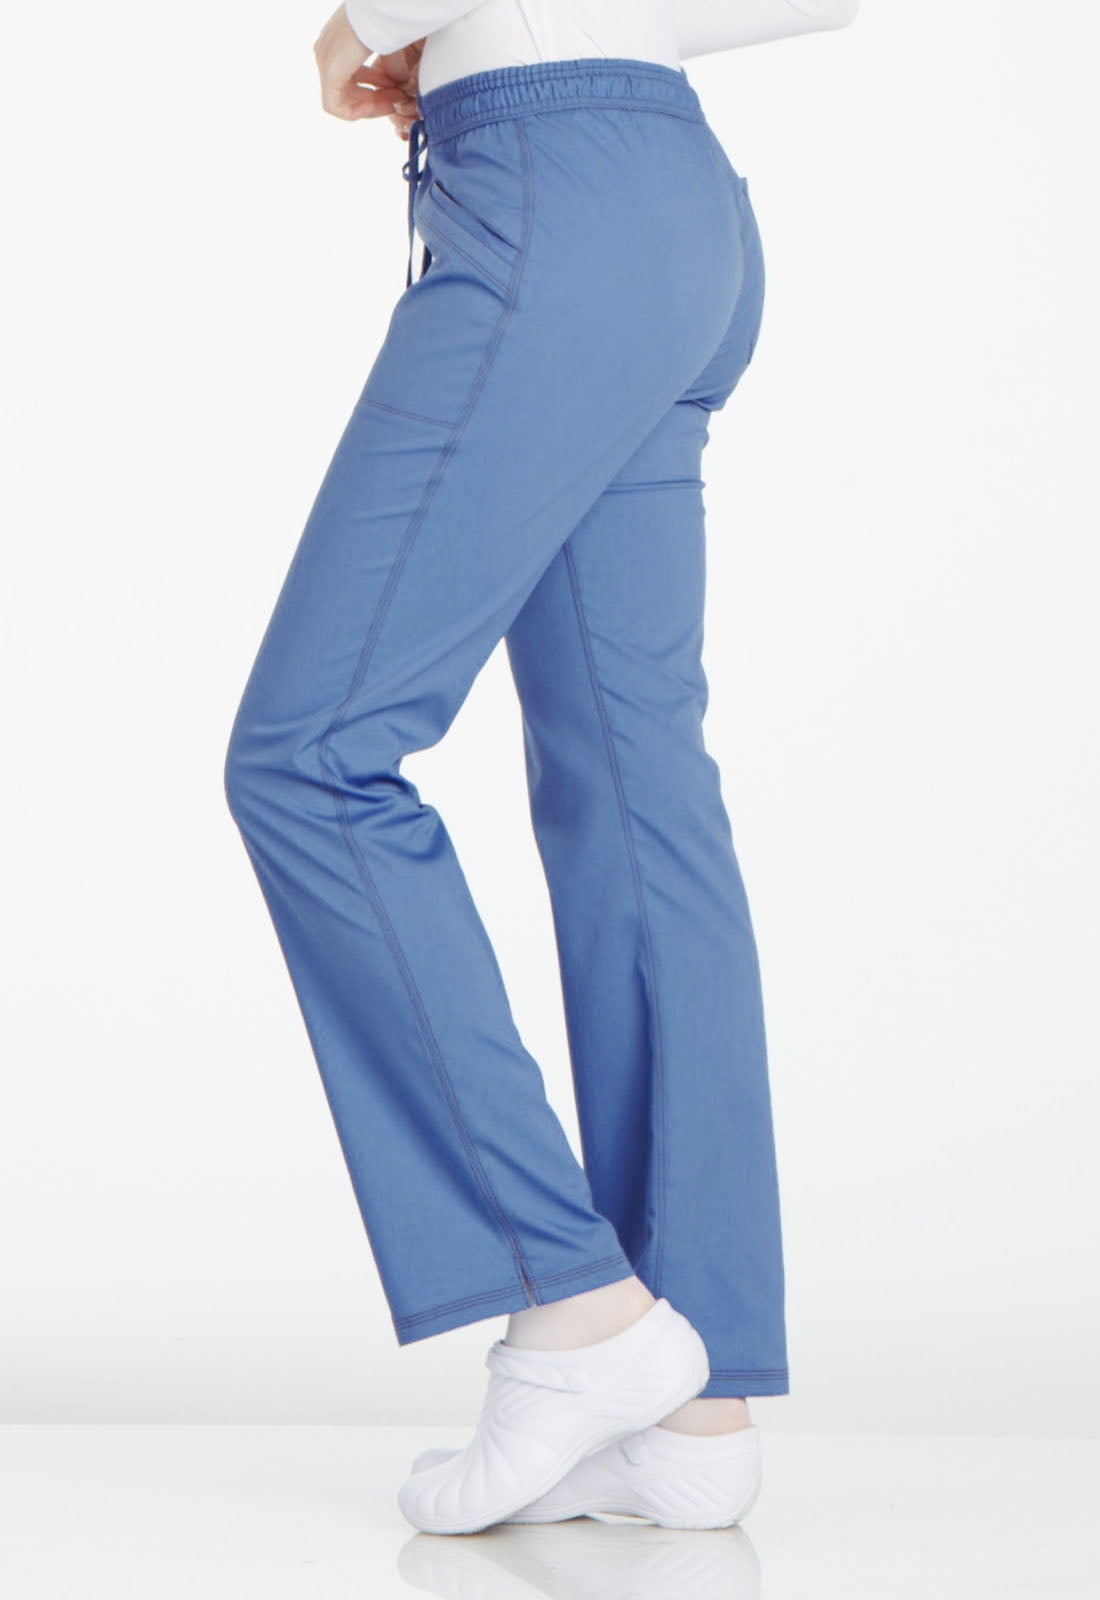 Turquoise Mid Rise Straight Leg Women's Petite Drawstring Pants DK106P -  The Nursing Store Inc.